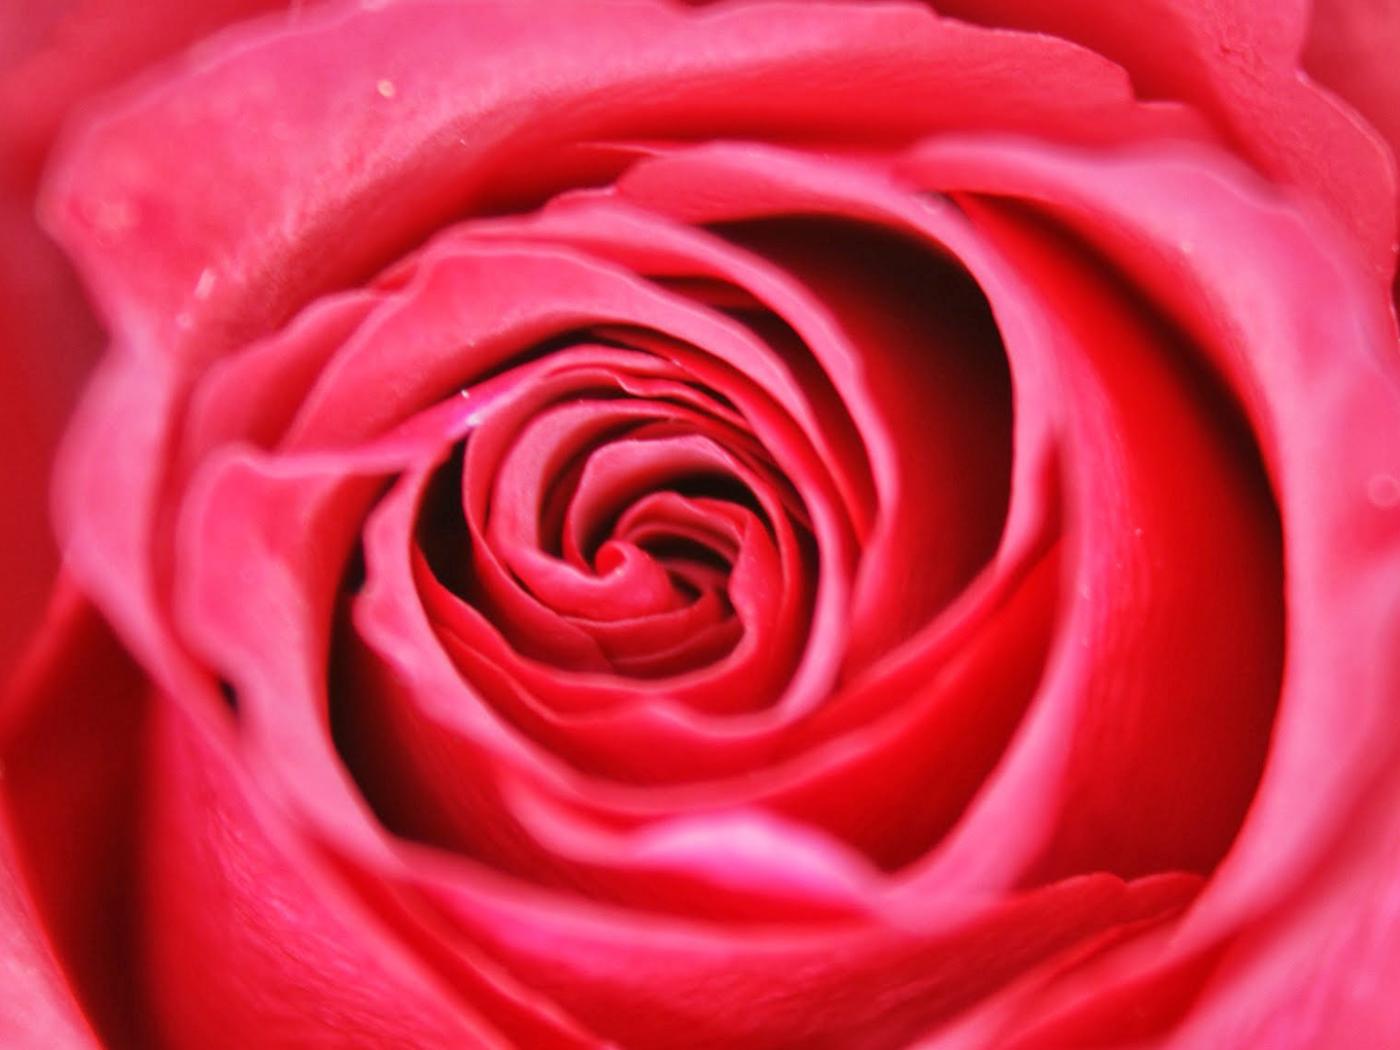 roj wallpaper,rose,garden roses,petal,flower,red